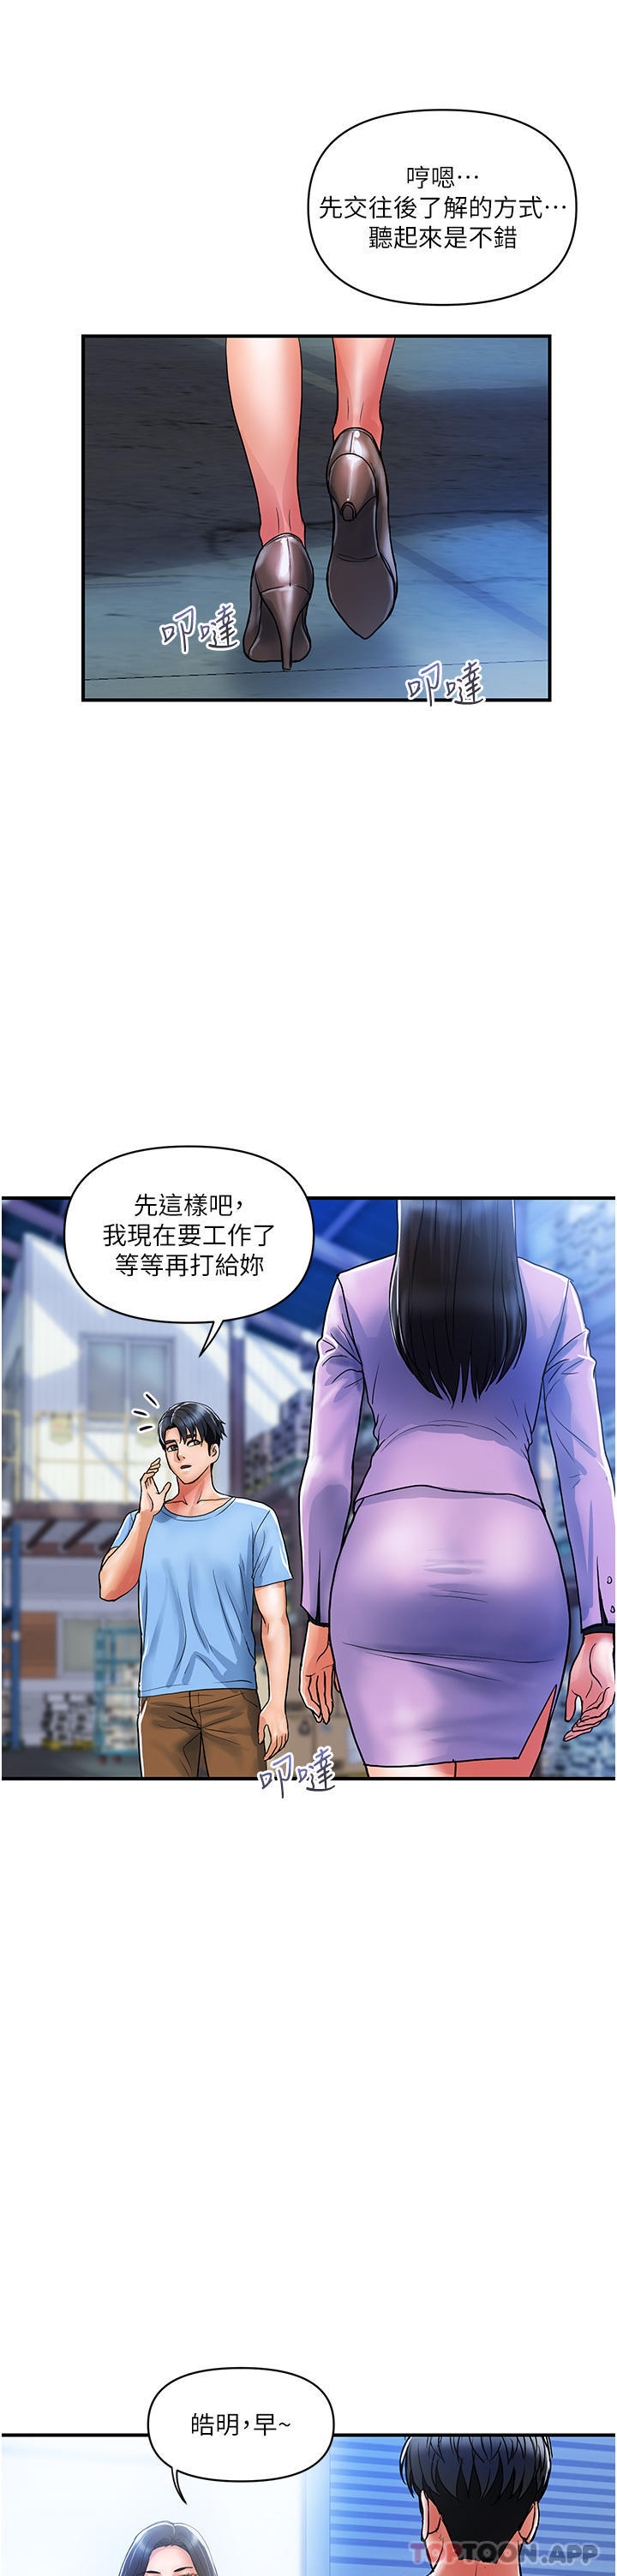 韩国污漫画 貴婦百貨 第15话-倒贴小鲜肉的离婚女 5